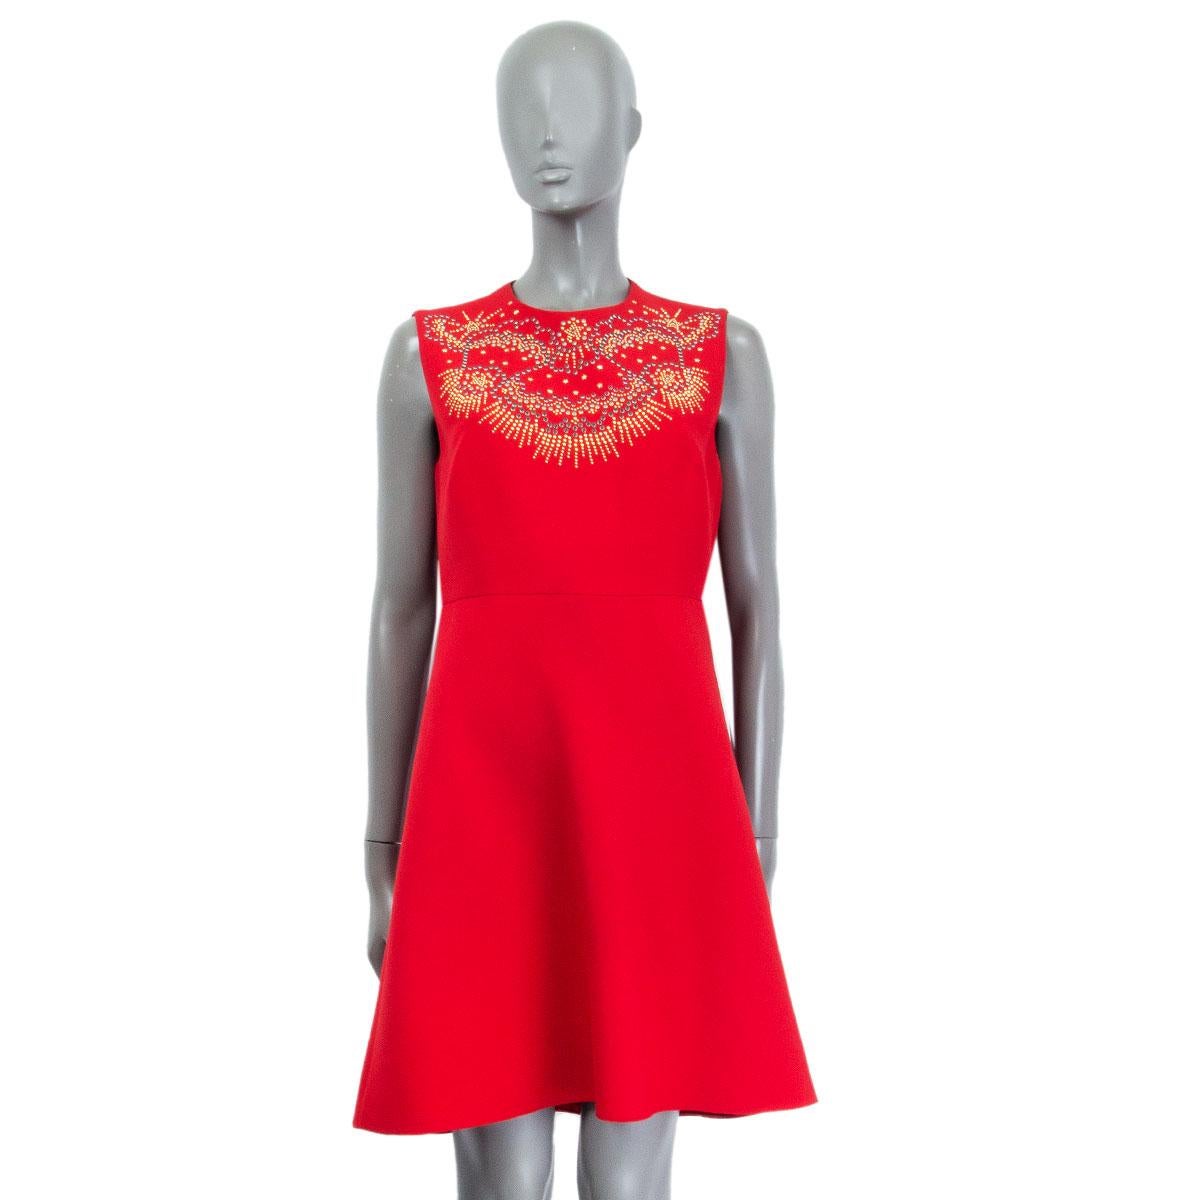 authentisches ärmelloses Kleid von Valentino aus roter Schurwolle (65% Seide, 35%), verziert mit mehrfarbigen Cabochon-Nieten. Mit roter Seide gefüttert. Wurde getragen und ist in ausgezeichnetem Zustand.

Tag Größe 44
Größe L
Schulterbreite 36cm